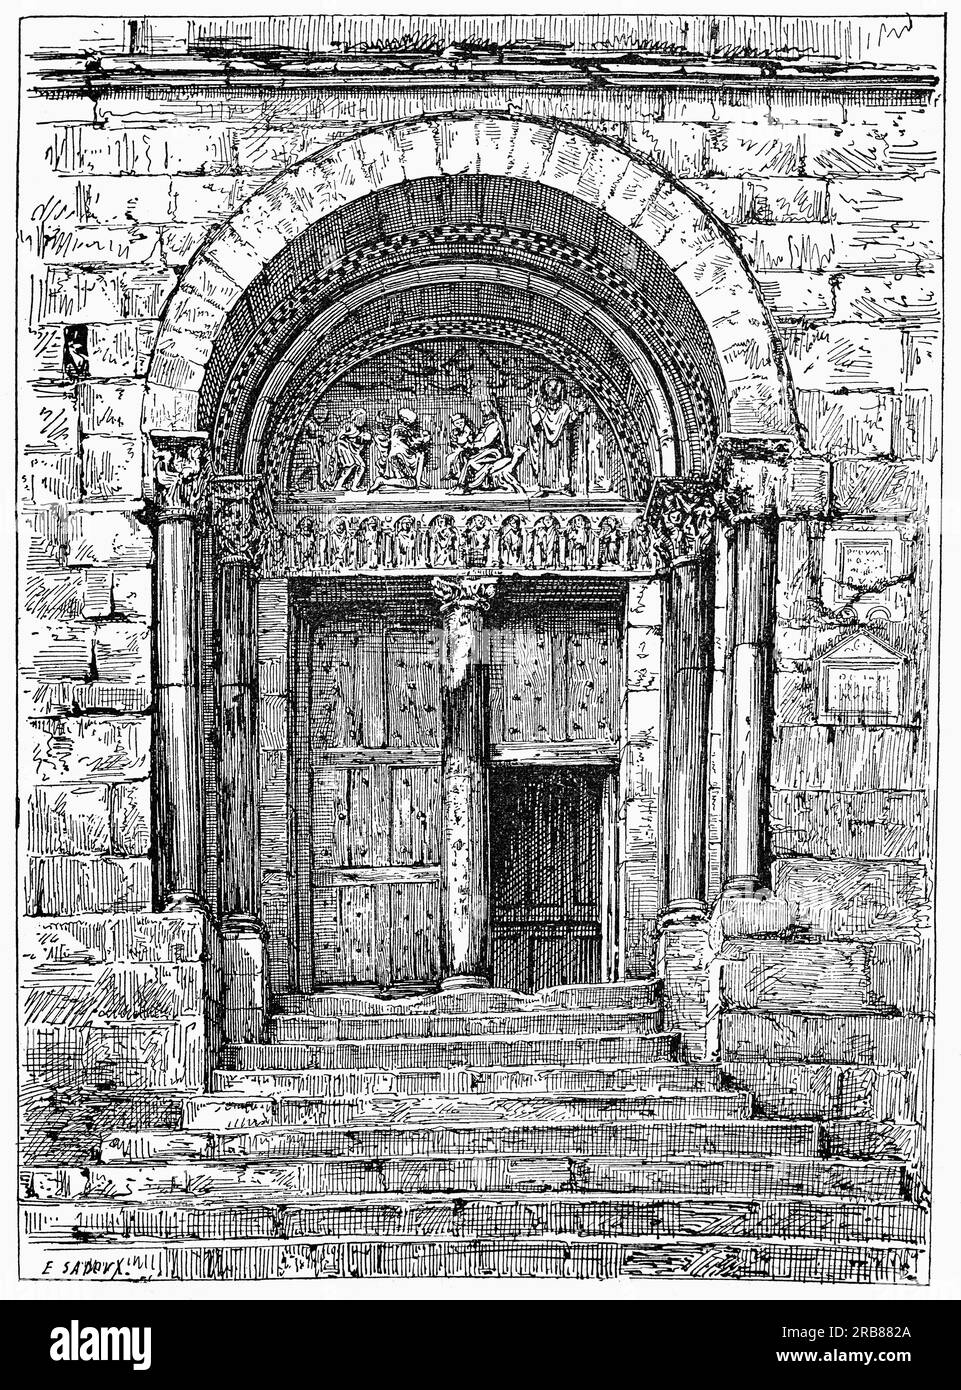 Illustration du début du 19e siècle d'une porte romane menant à l'ancienne cathédrale catholique romaine construite entre les 12e et 16e siècles à Saint-Bertrand-de-Comminges, haute-Garonne, sud-ouest de la France. C'était le siège de l'ancien diocèse de Comminges. Banque D'Images